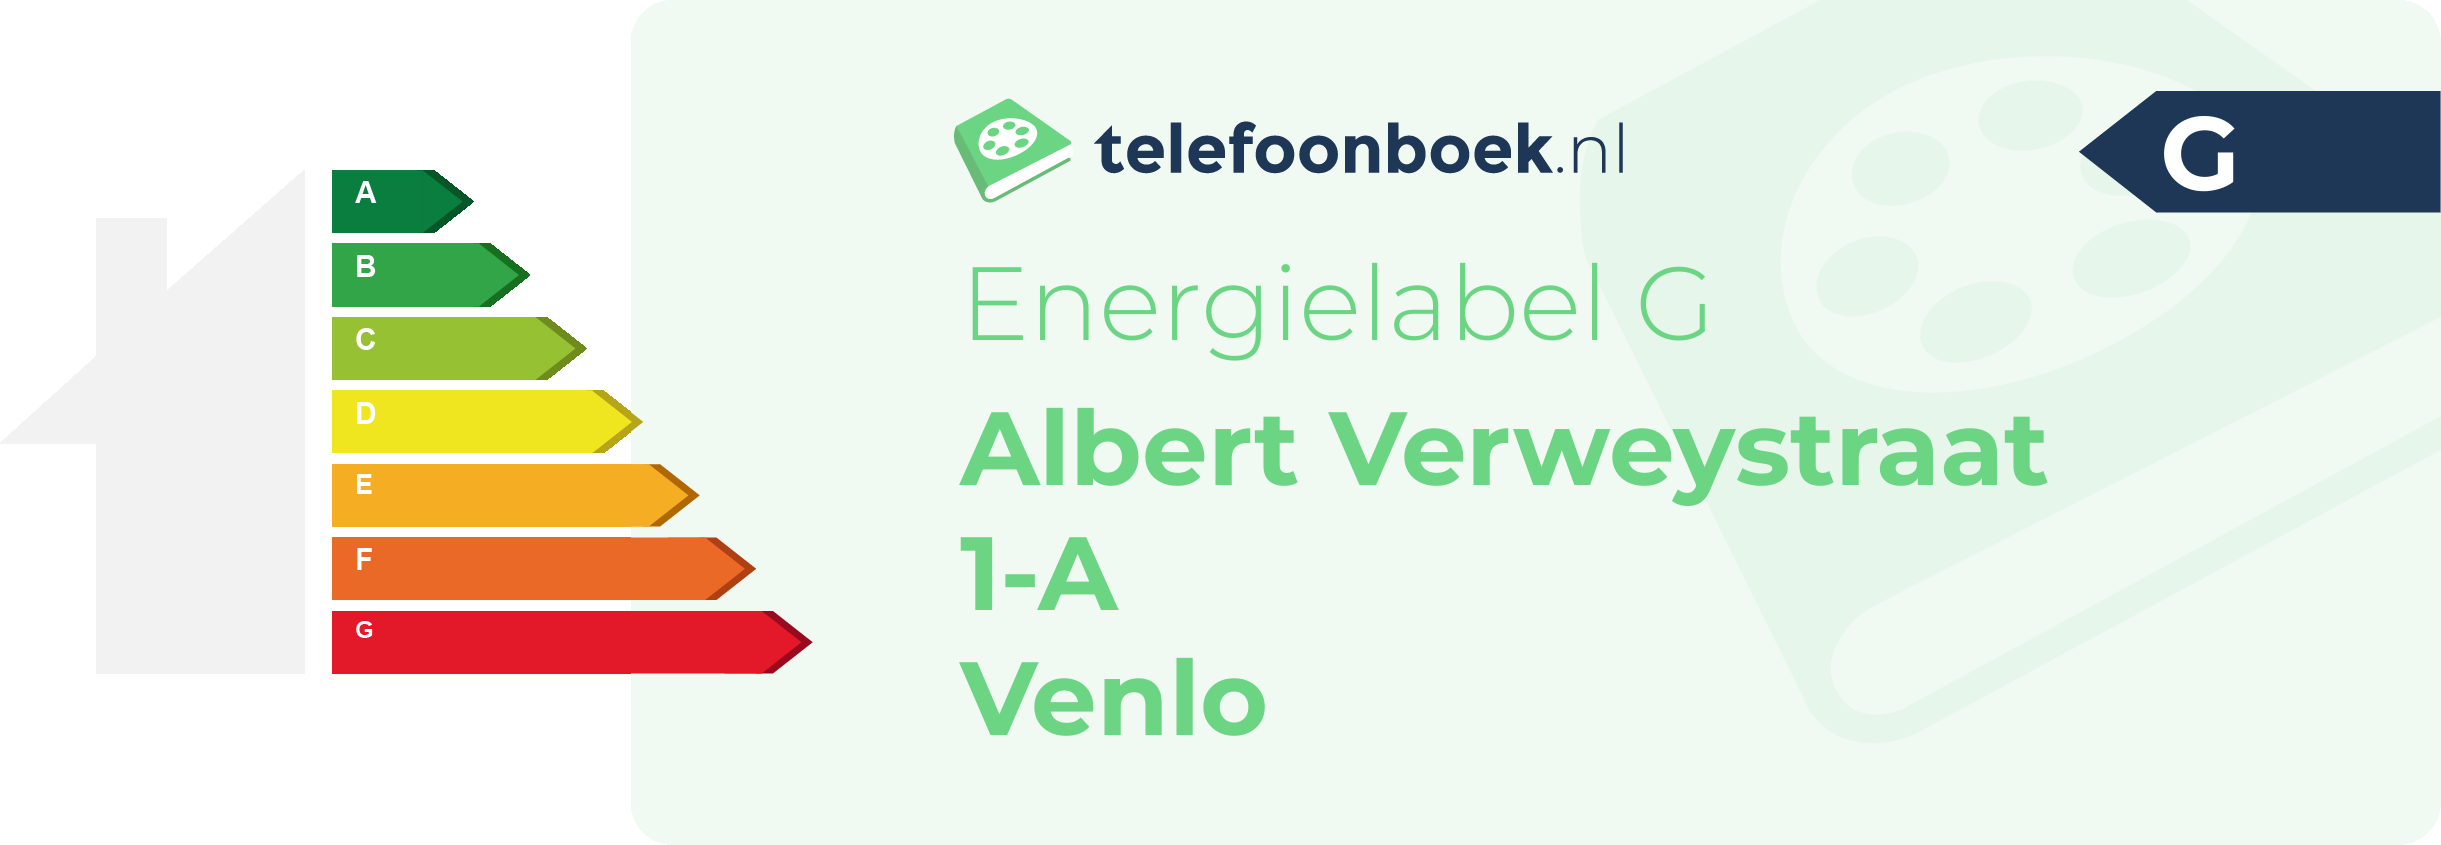 Energielabel Albert Verweystraat 1-A Venlo